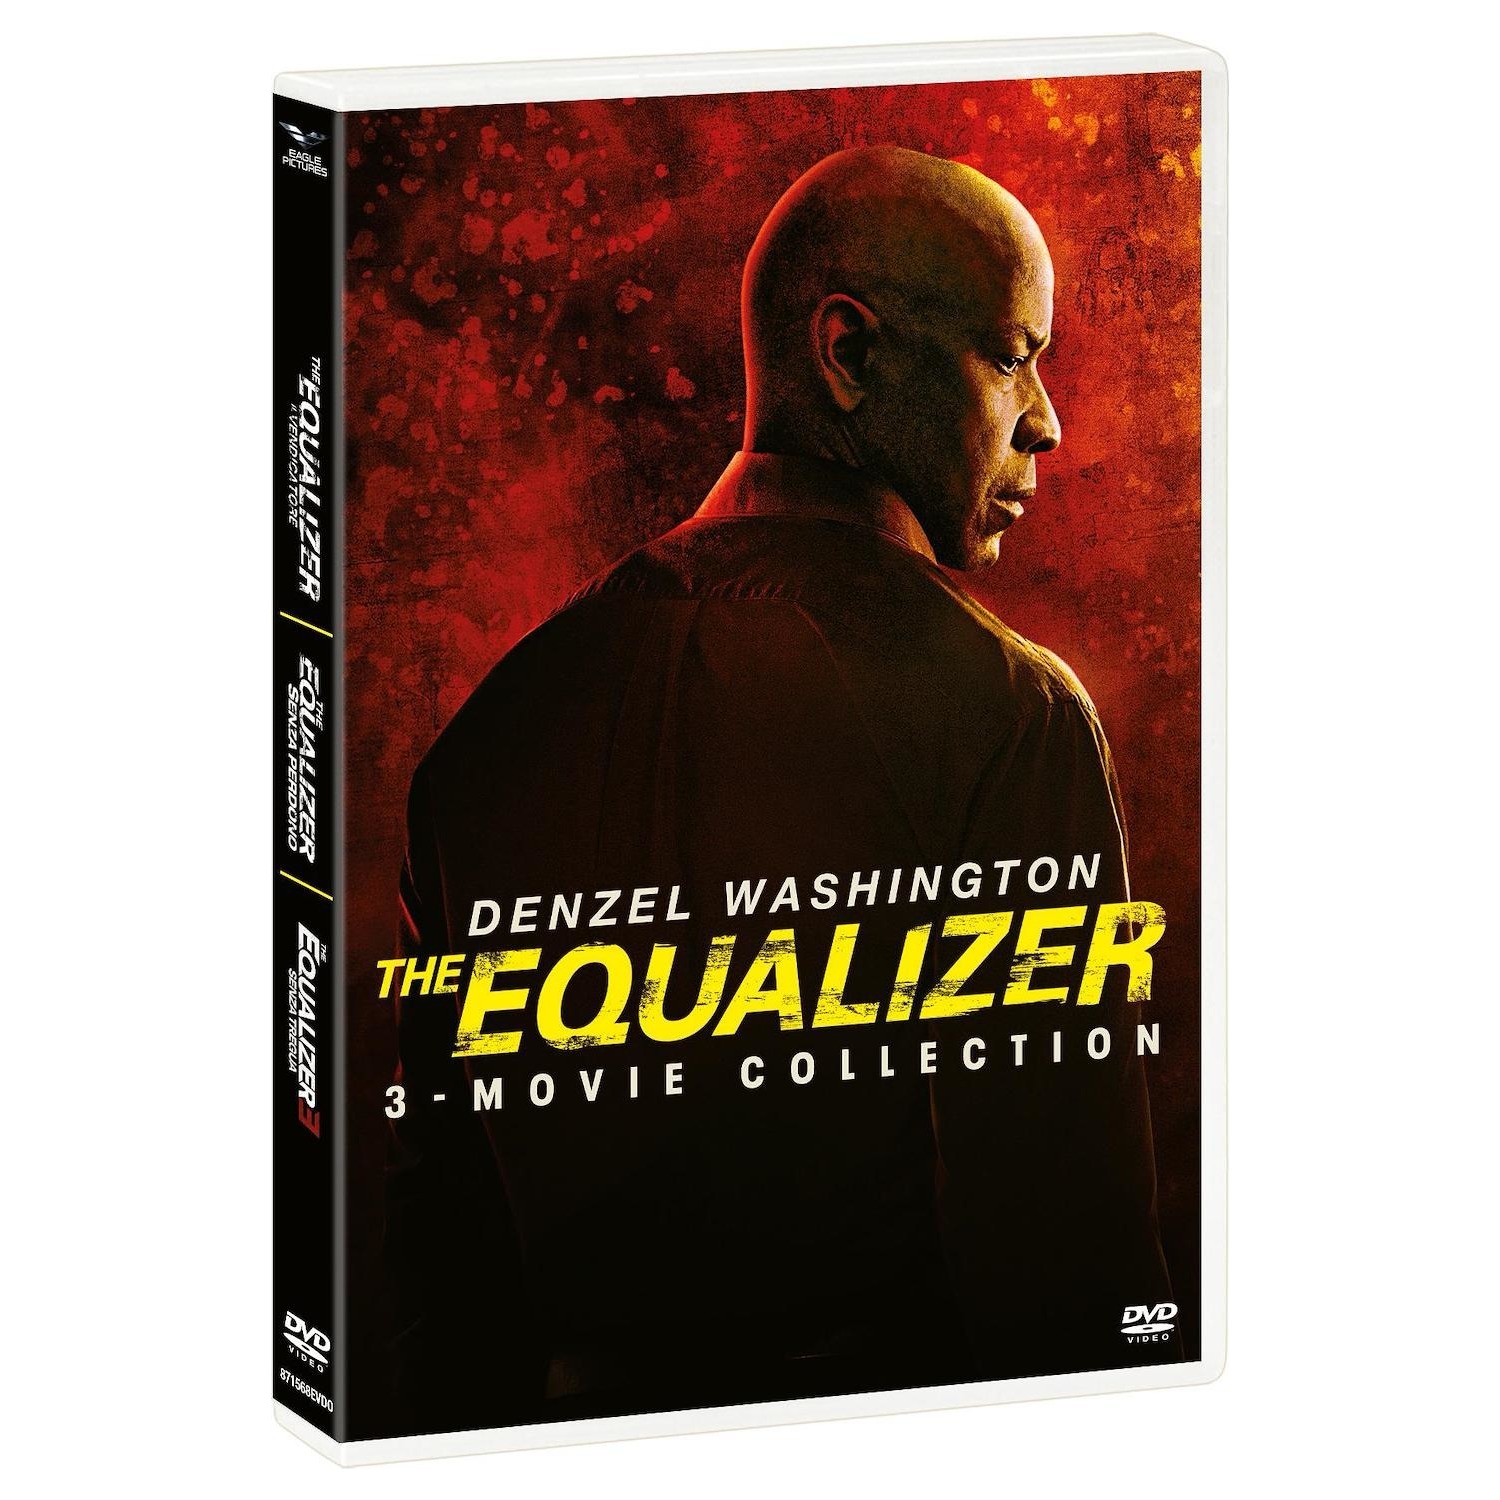 Immagine per Cofanetto DVD The Equalizer 1-3 Movie Collection da DIMOStore